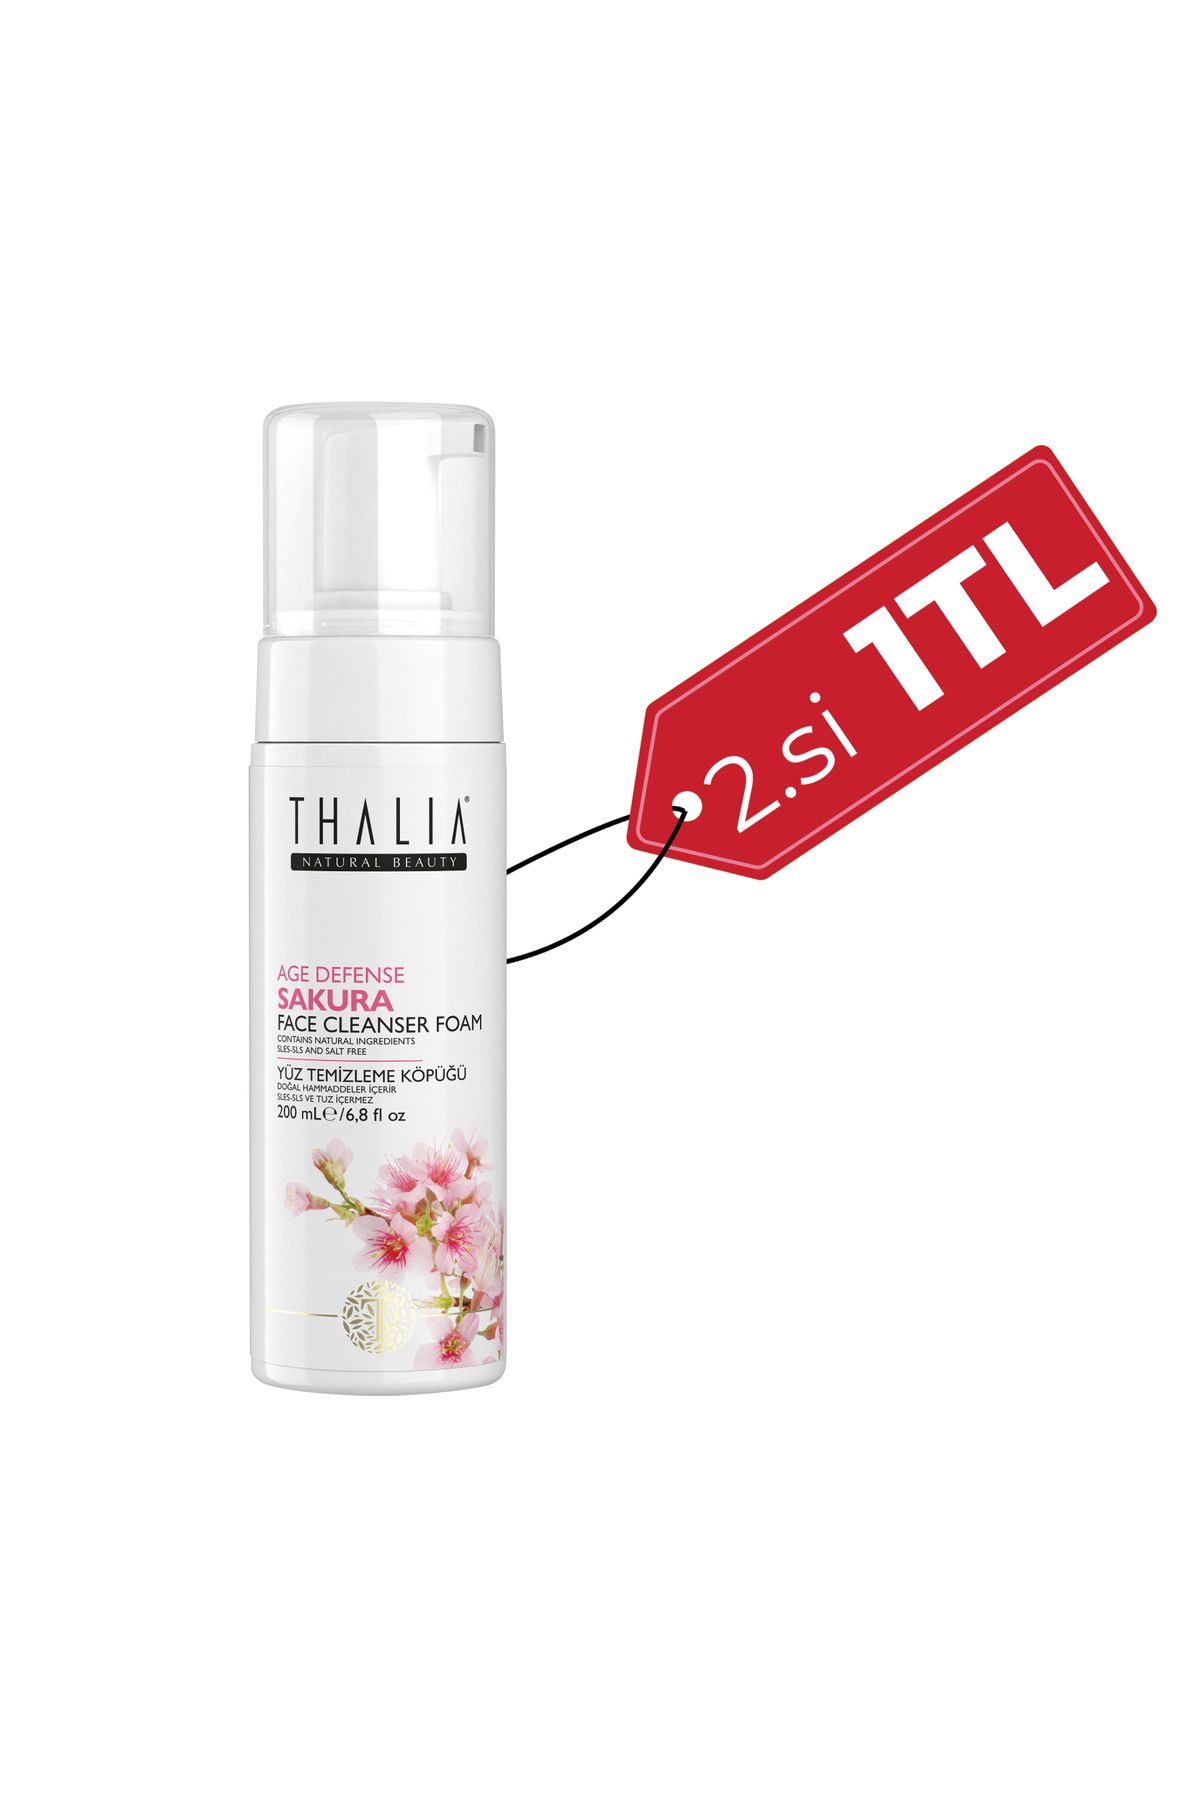 Thalia Kırışıklık Önlemeye Yardımcı Sakura Özlü Yüz Temizleme Köpüğü - 150 ml